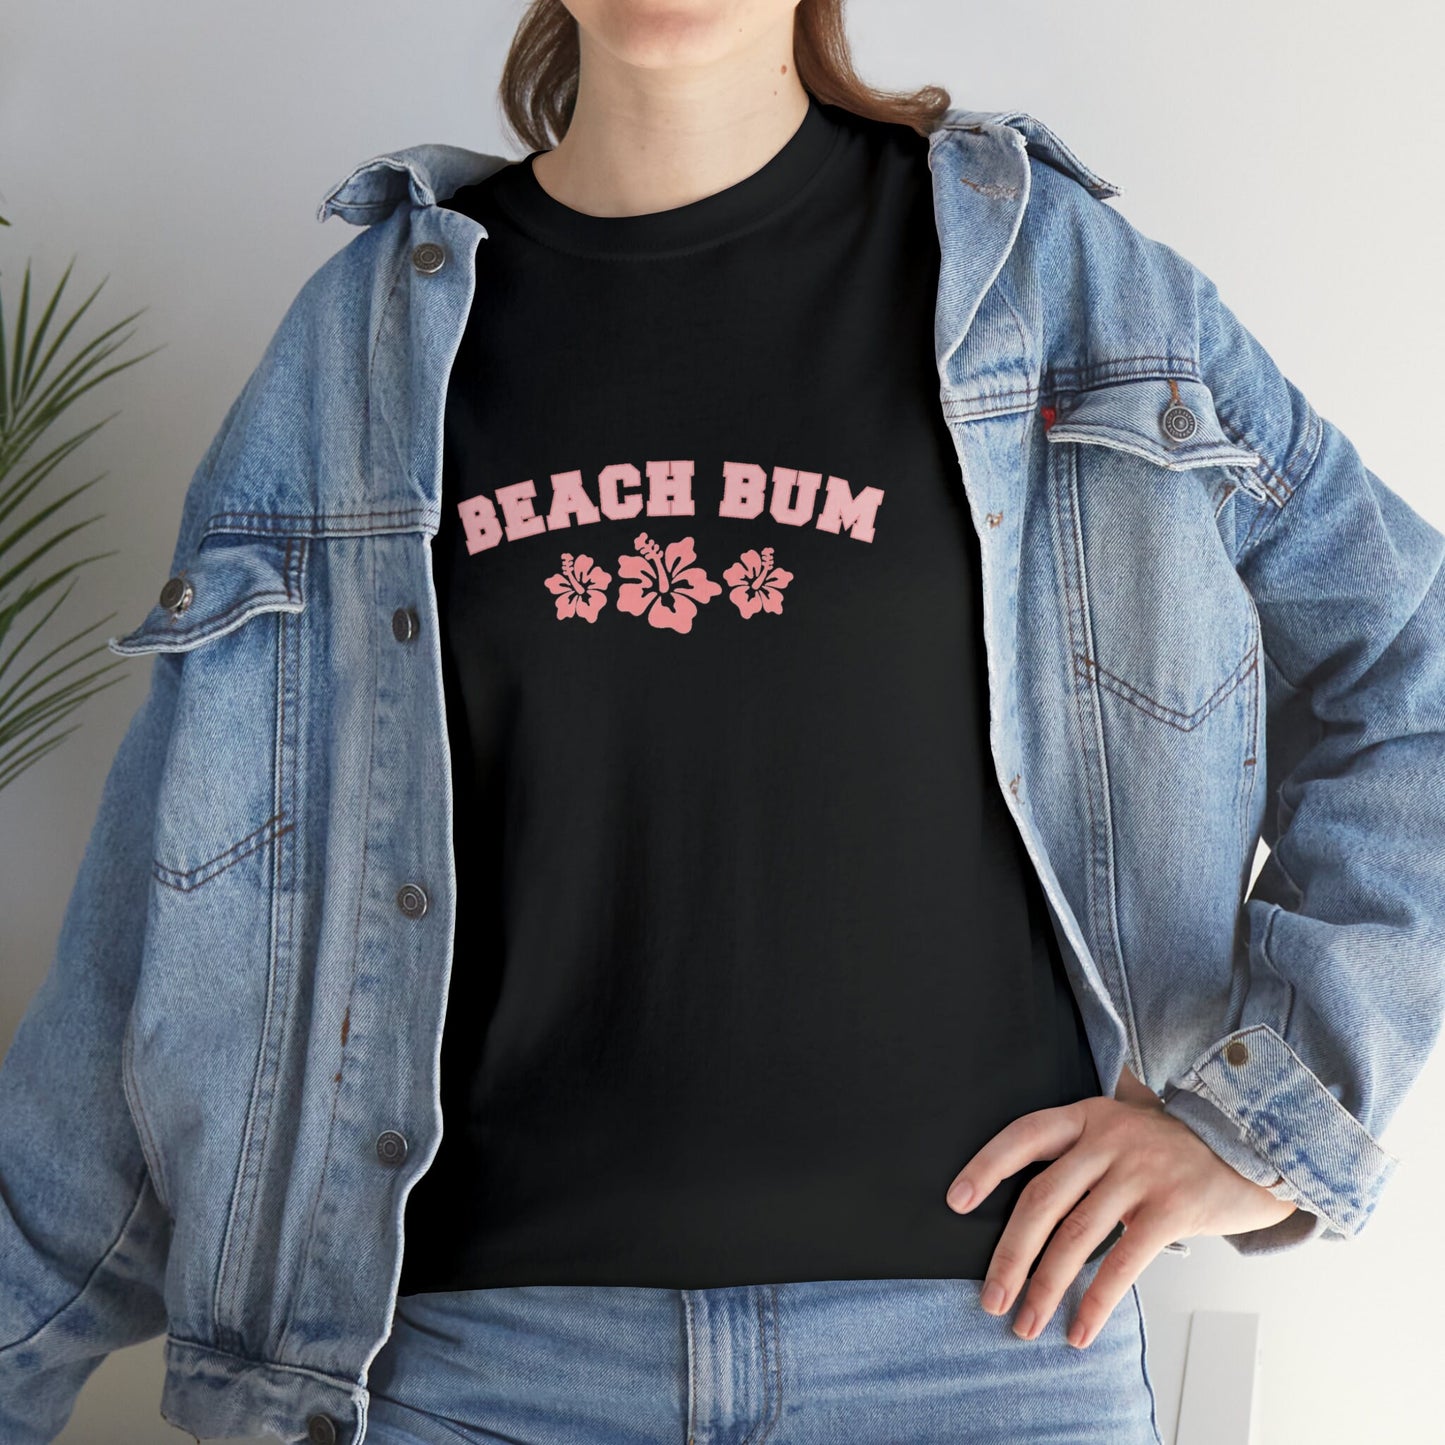 Beach Bum T-Shirt, Vacation Clothes, Hawaiian Plumeria Top